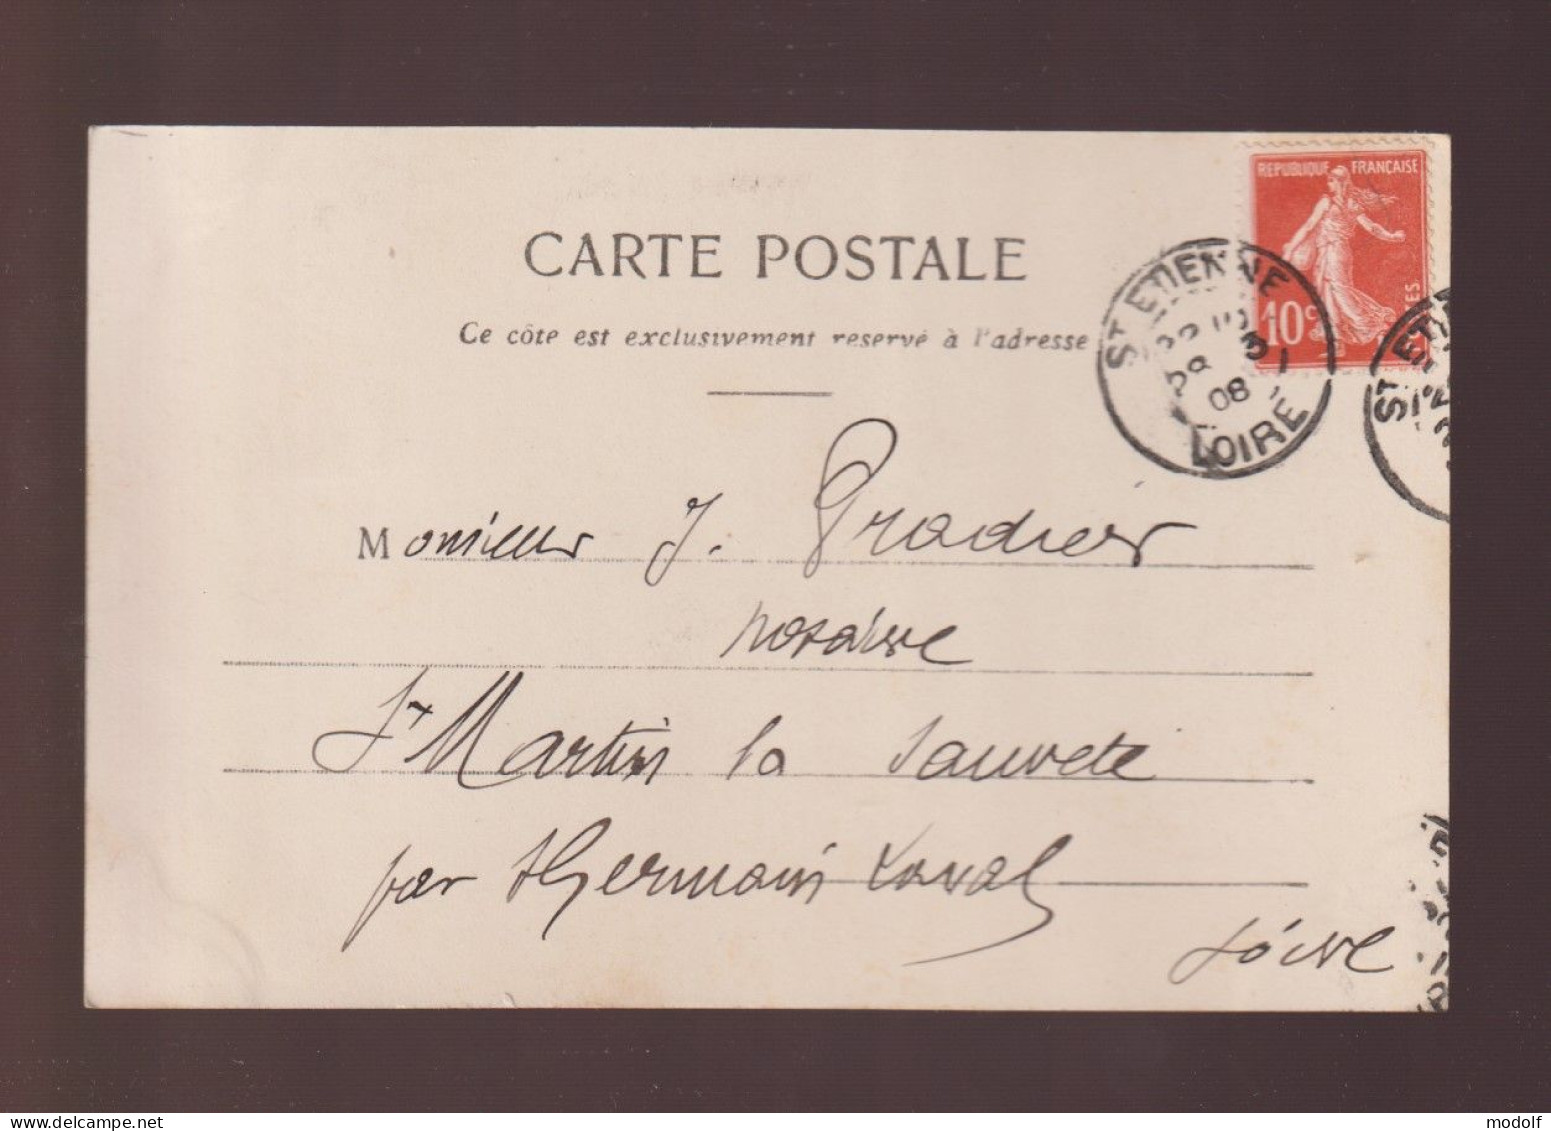 CPA - 42 - St-Etienne - Colline Sainte-Barbe - Précurseur - Circulée En 1908 - Saint Etienne